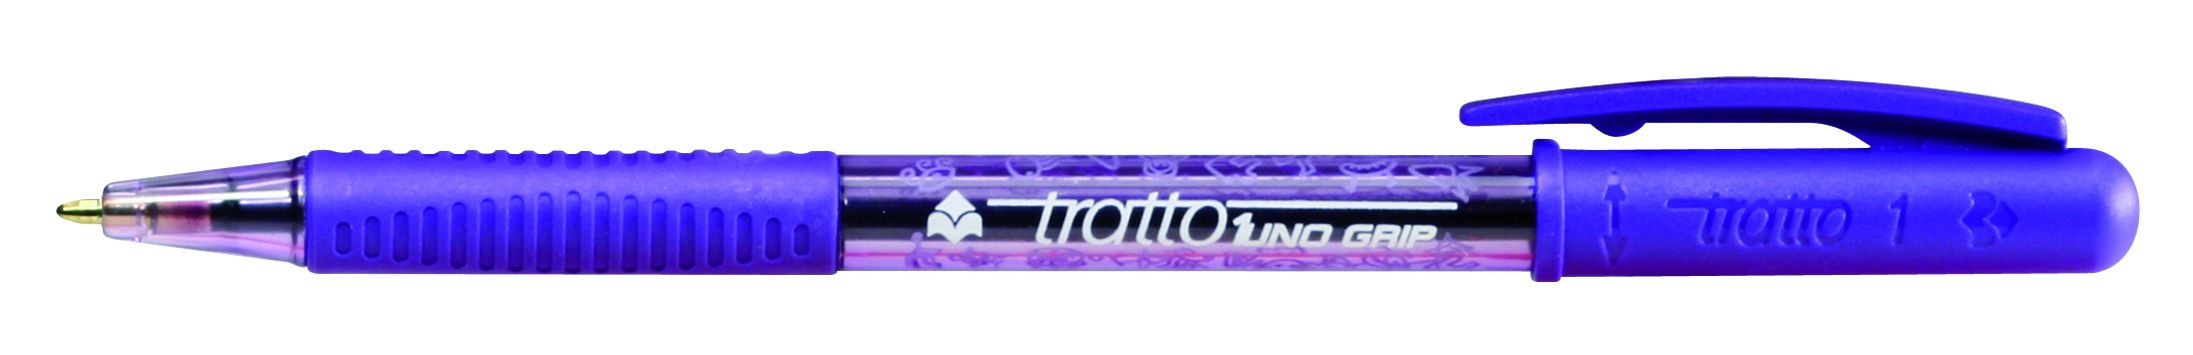 Ручка шариковая фиолетовая Tratto 1 Grip поворотная резин. держат.